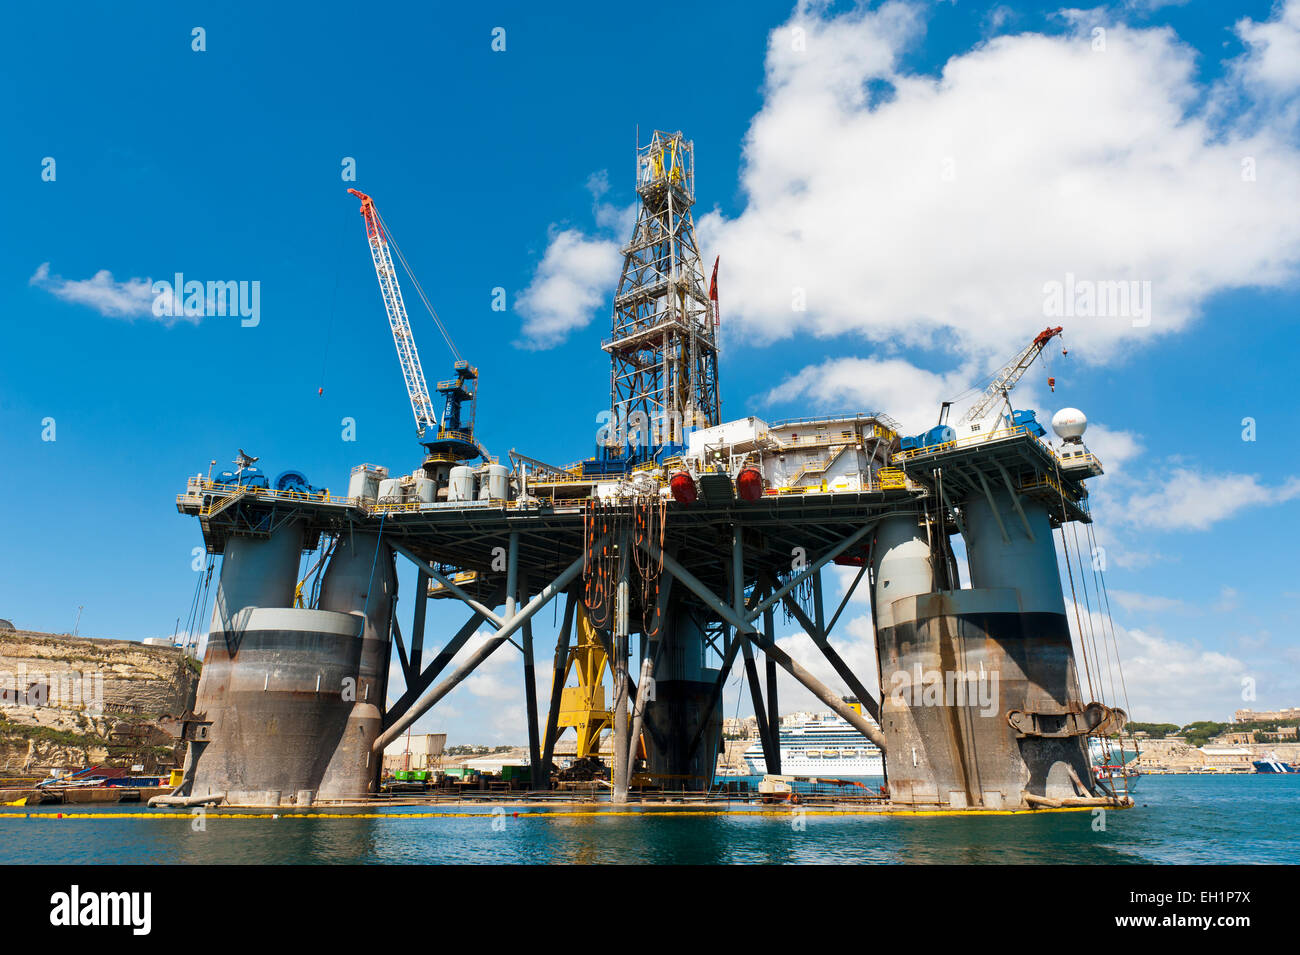 Oil rig in the harbour, Senglea, Malta Stock Photo